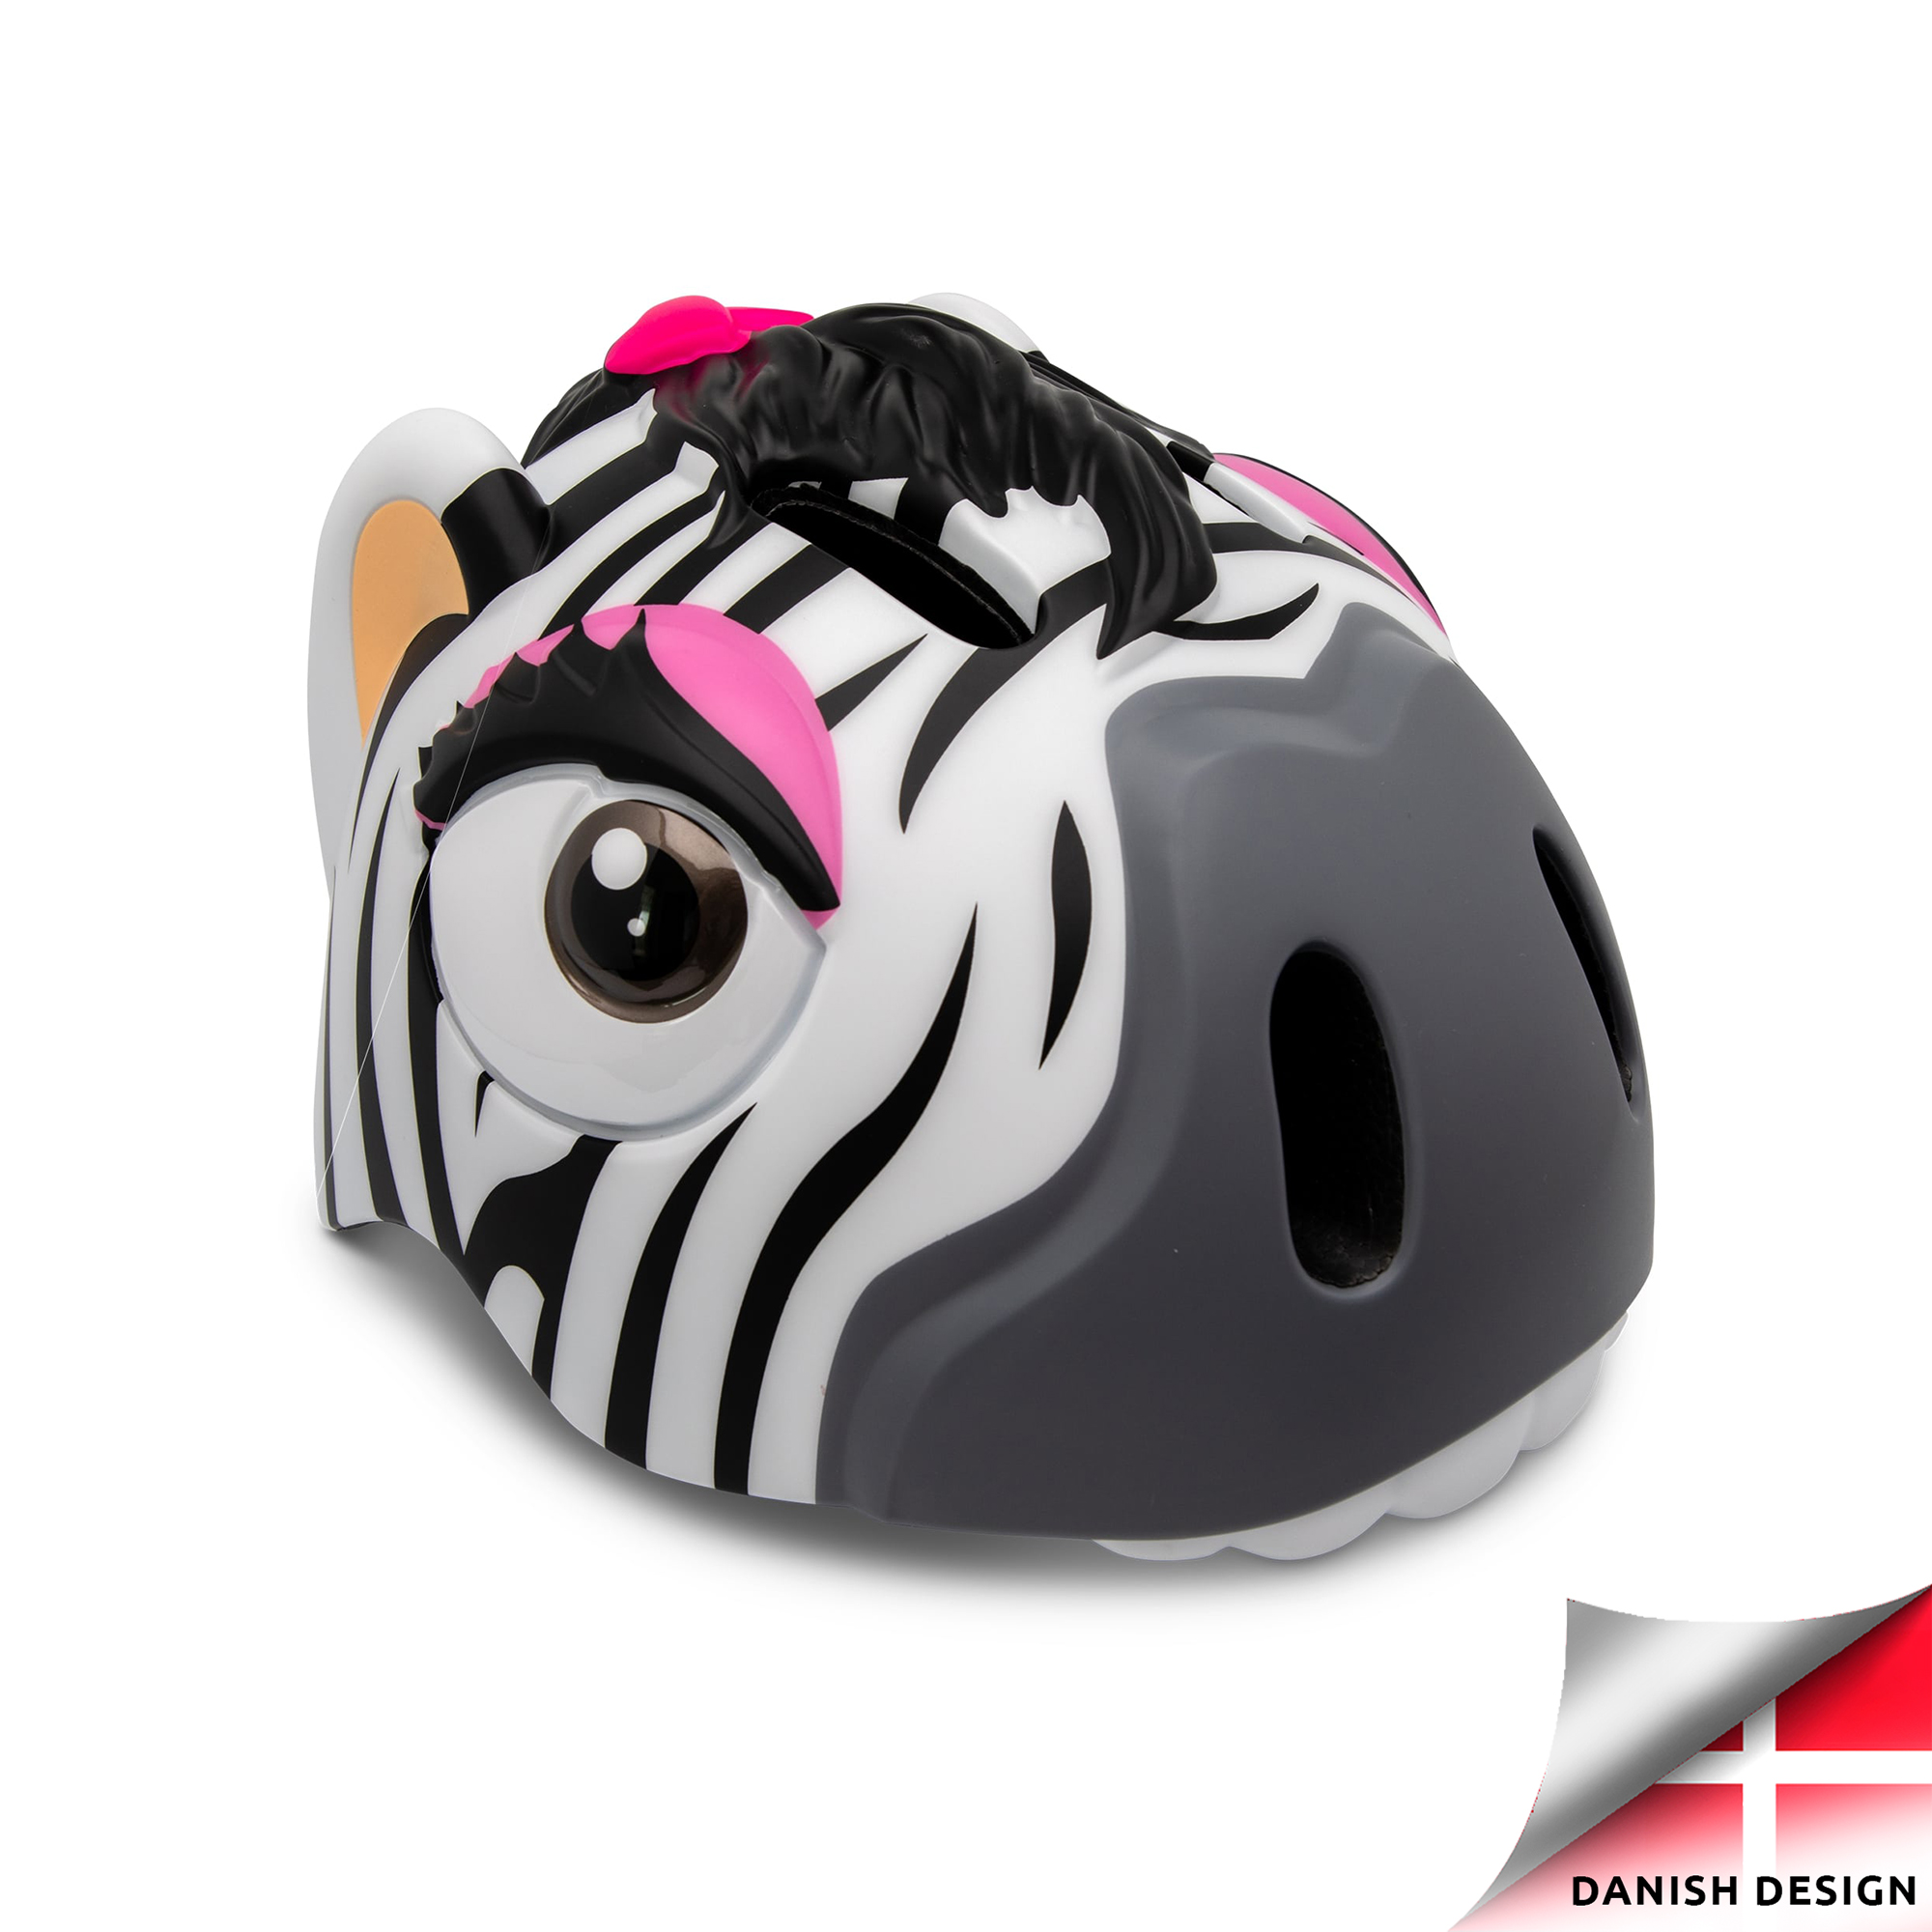 Zebra | Geprüft, SAFETY Safety CRAZY Weißes 49-55cm Fahrradhelm Kinder cm, Crazy EN1078 White) | | für